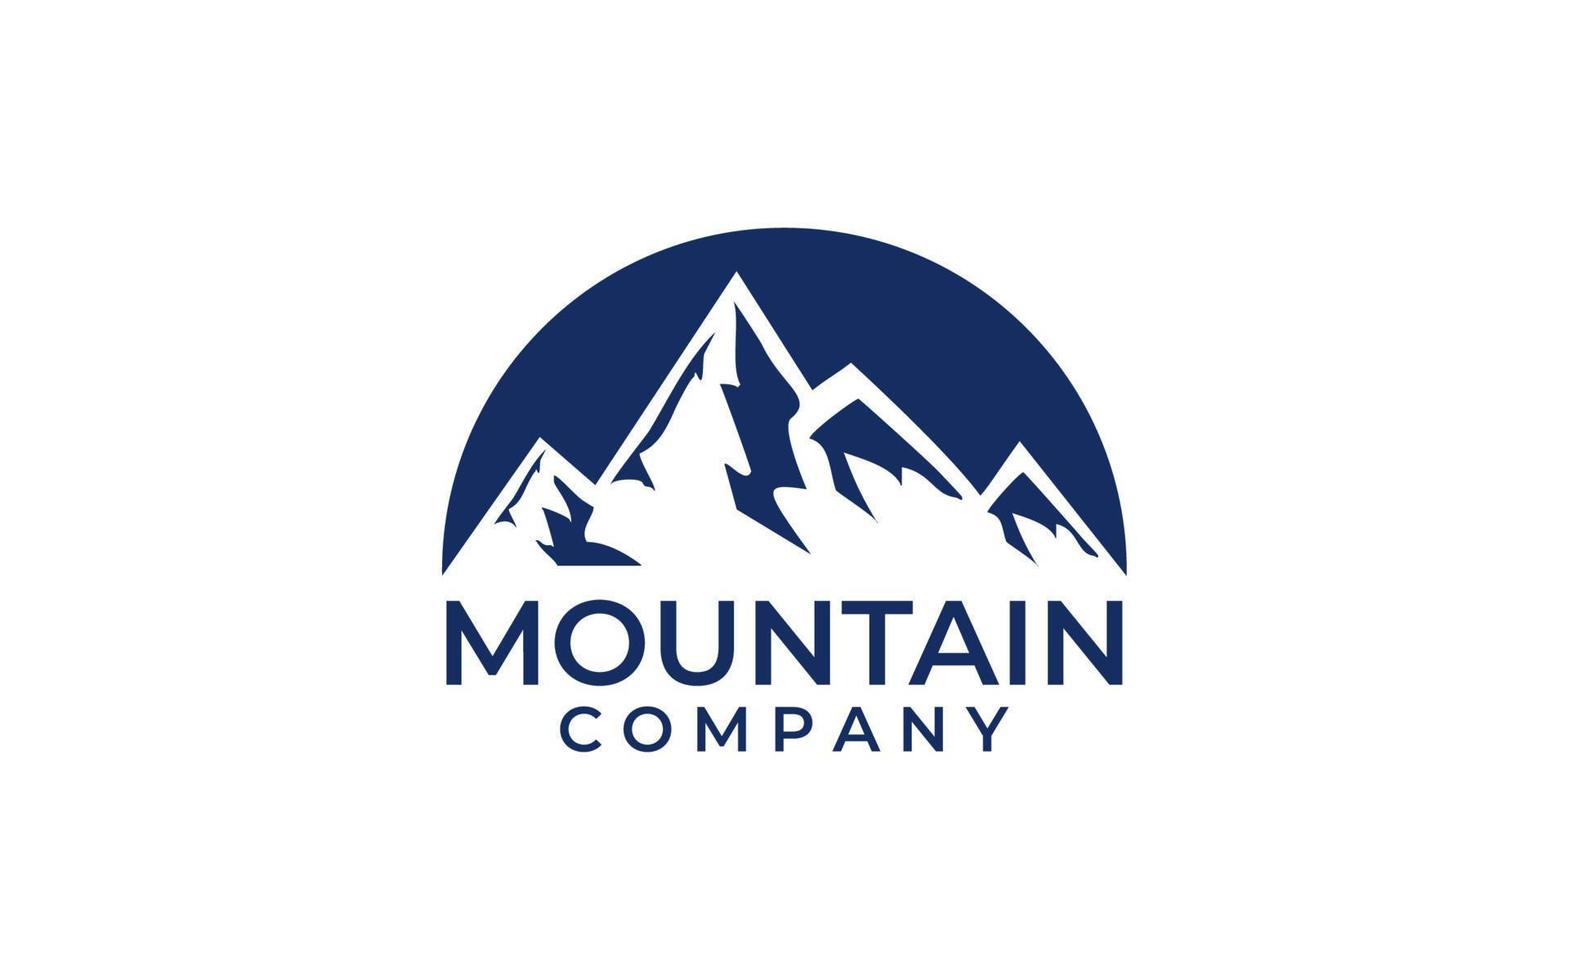 Montagne silhouette pour Extérieur Voyage aventure ancien logo conception modèle vecteur